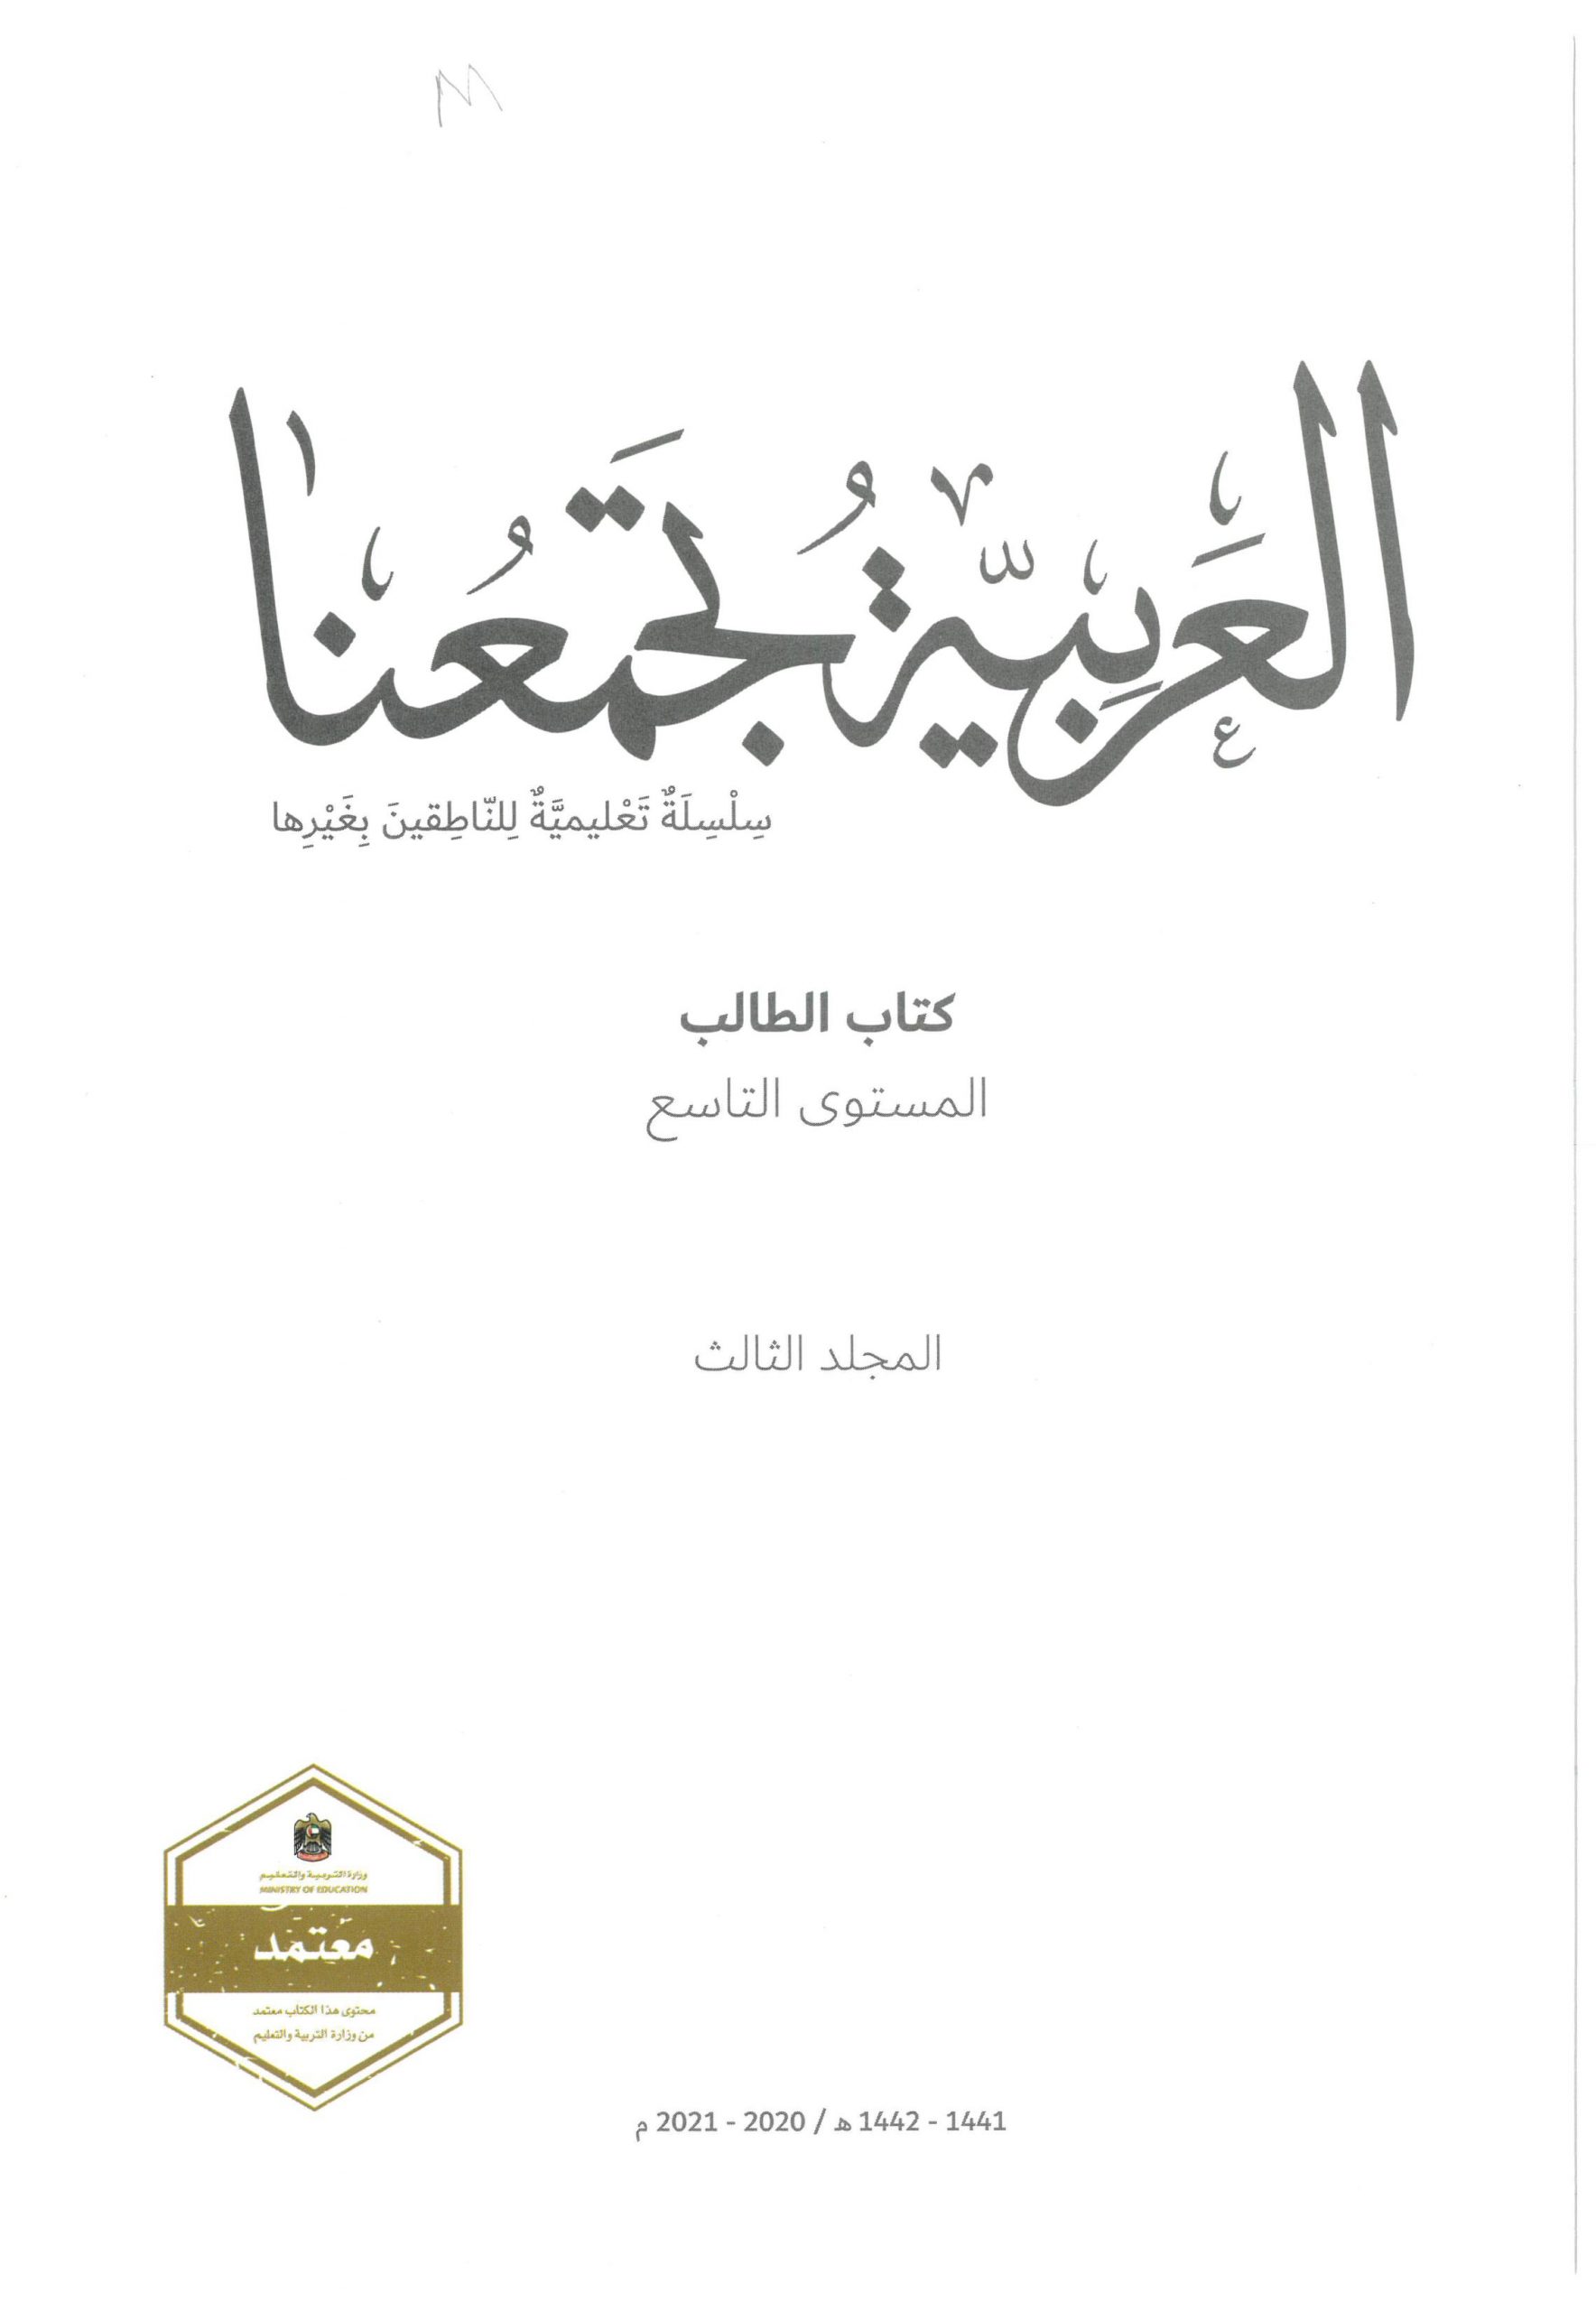 كتاب الطالب لغير الناطقين بها الفصل الدراسي الثالث 2020-2021 الصف التاسع مادة اللغة العربية